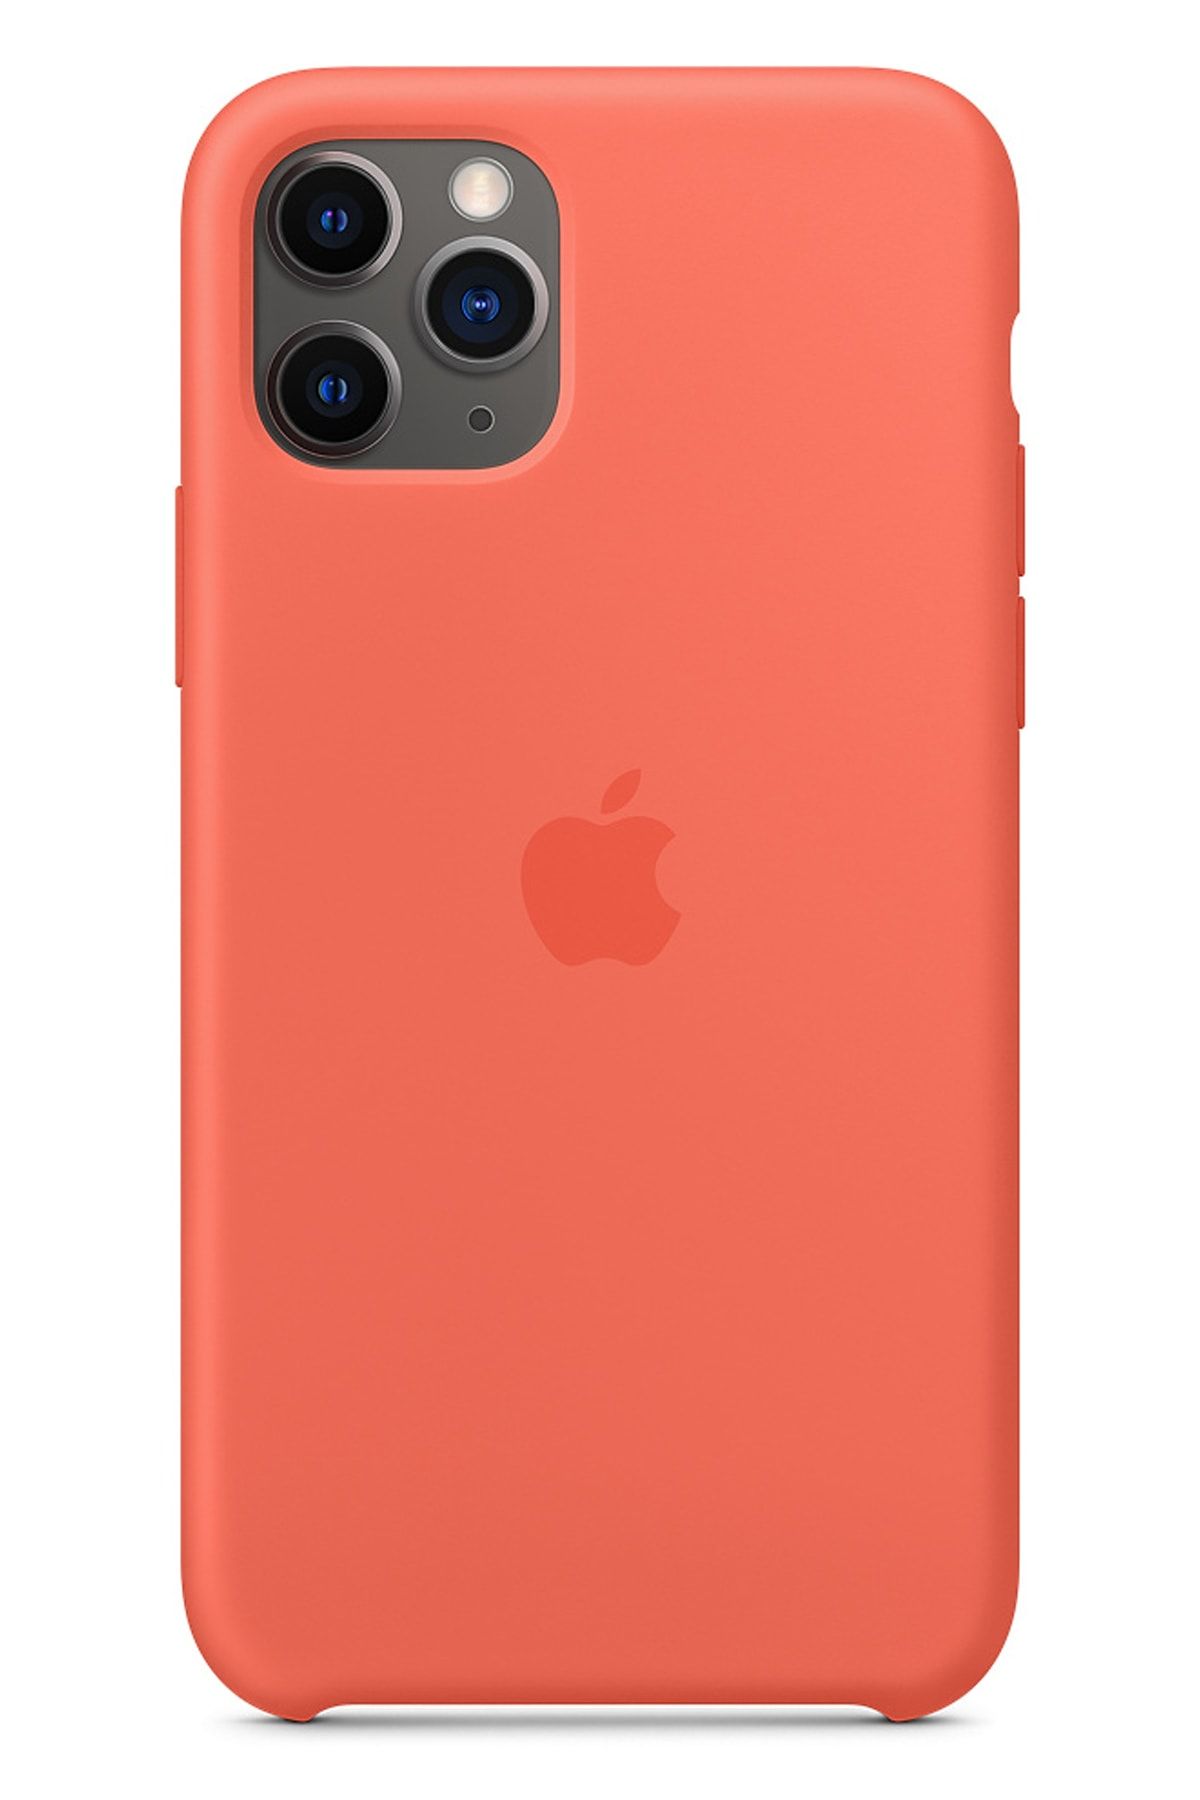 Ebotek Apple Iphone 11 Pro Max Silikon Kılıf Turuncu